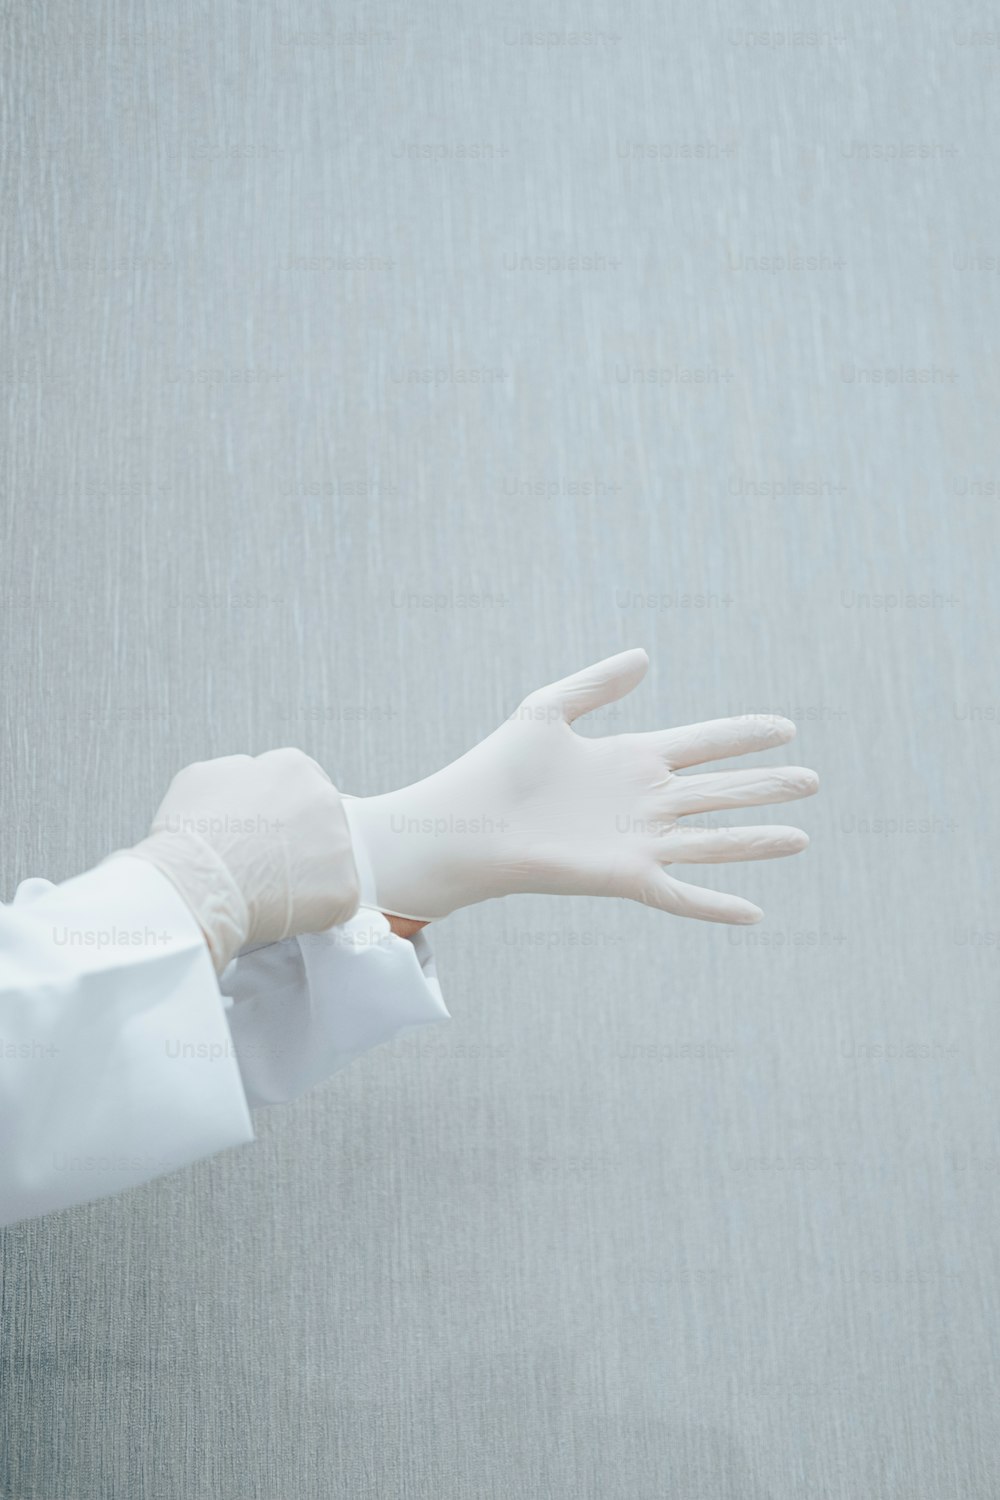 una mano enguantada con un guante blanco